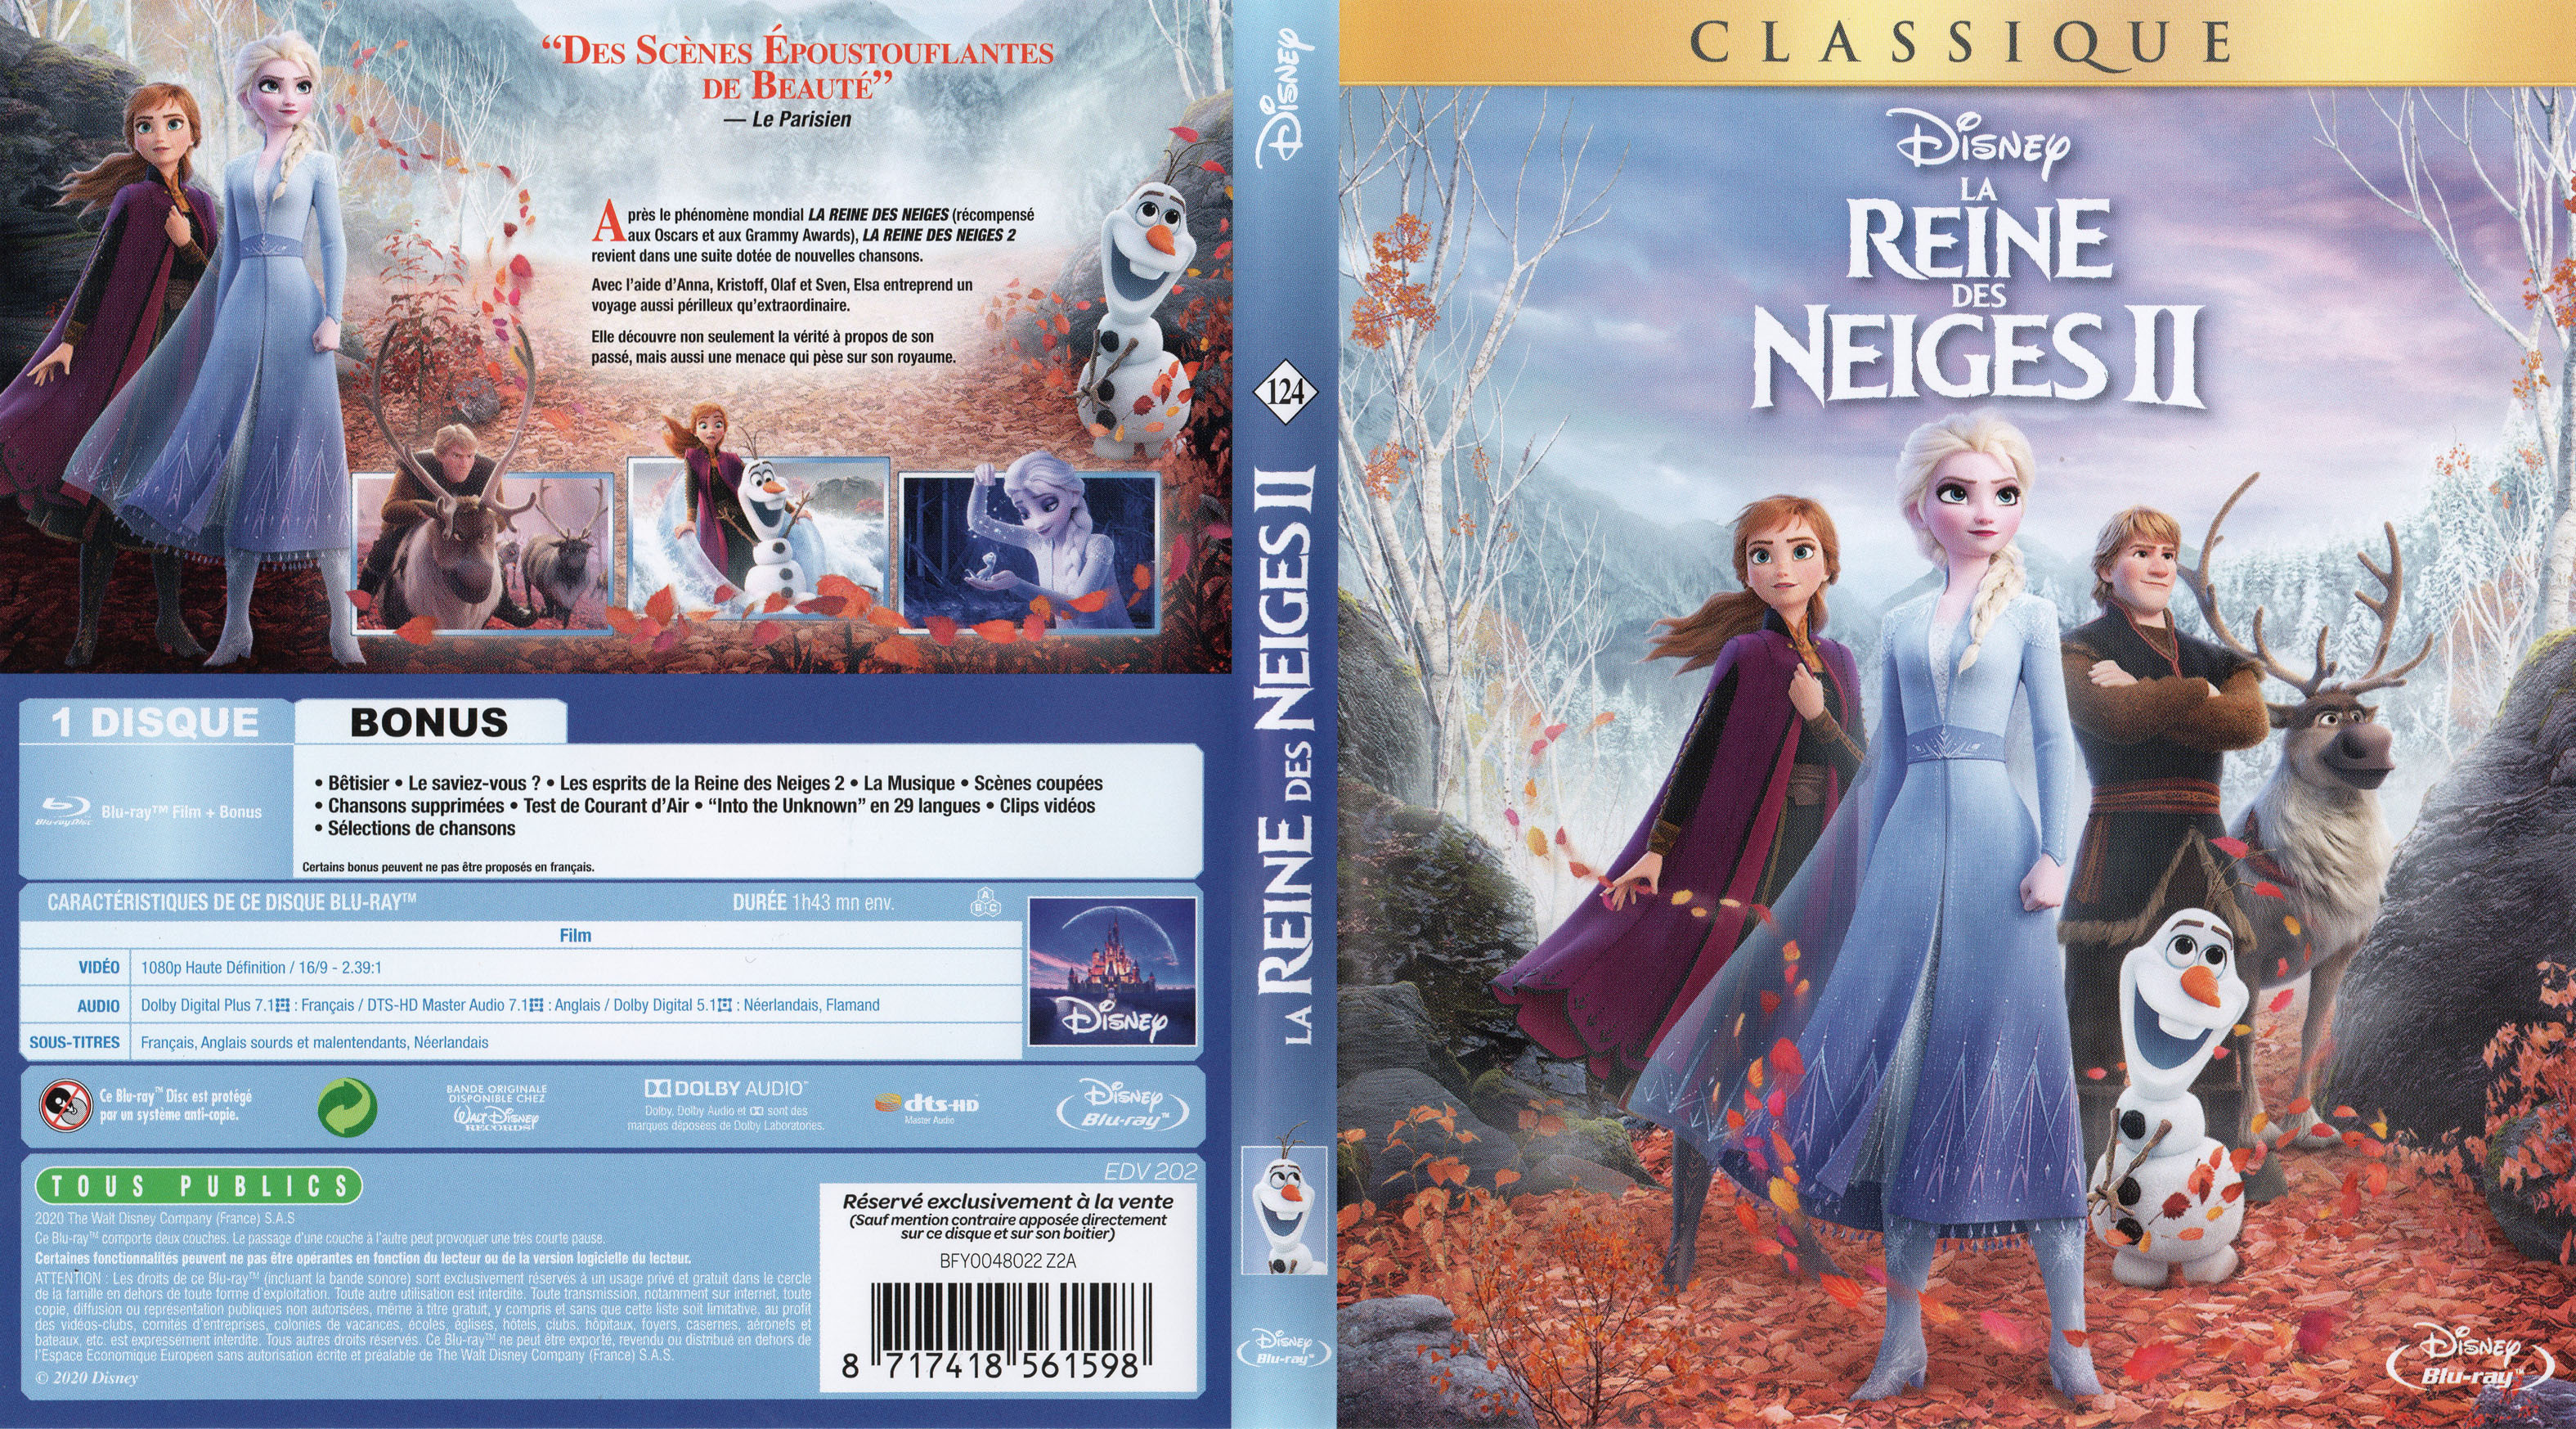 Jaquette DVD de La reine des neiges II (BLU-RAY) - Cinéma Passion